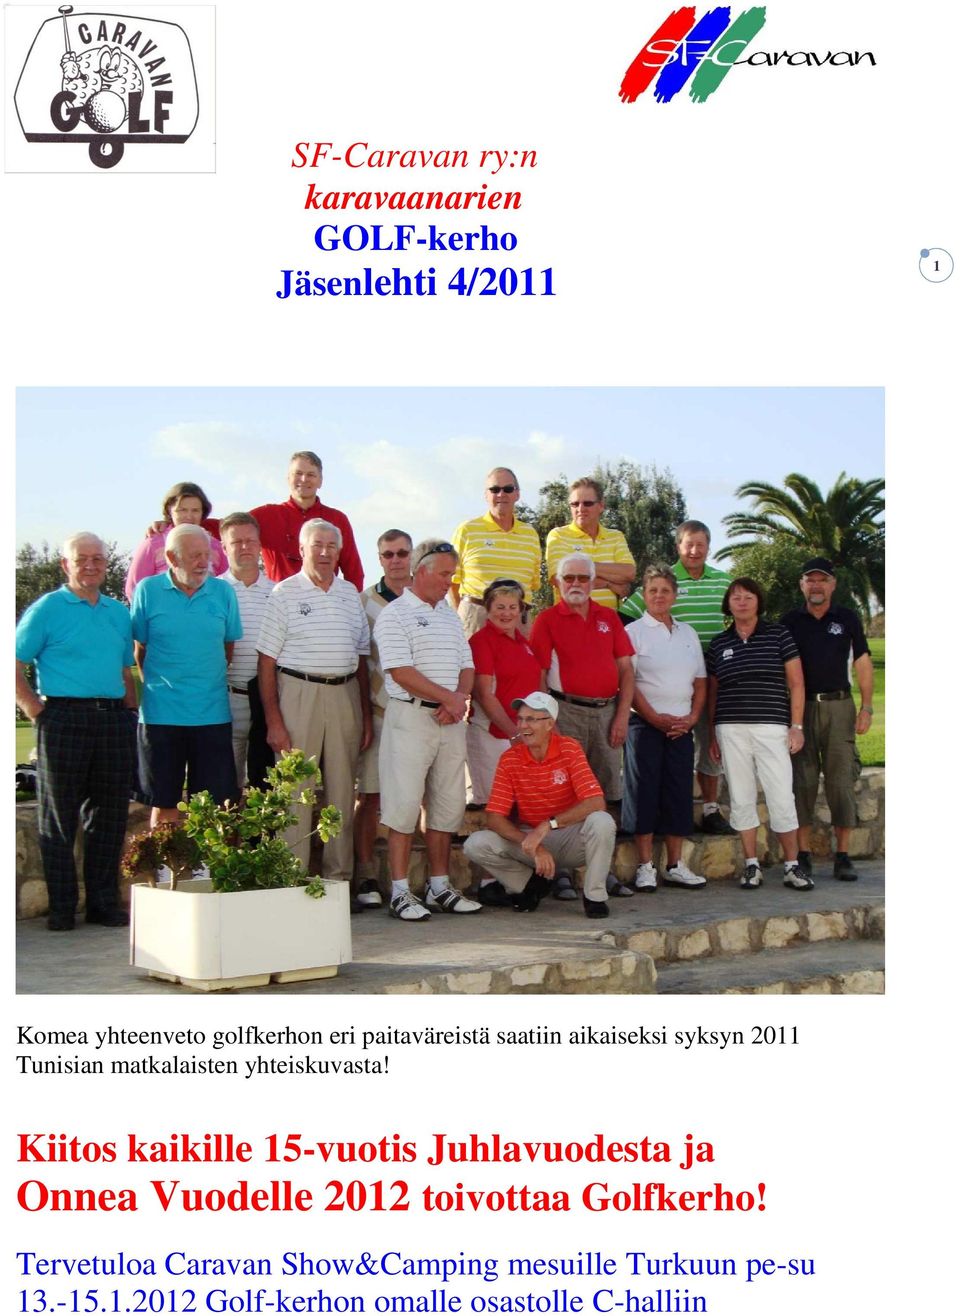 Kiitos kaikille 15-vuotis Juhlavuodesta ja Onnea Vuodelle 2012 toivottaa Golfkerho!